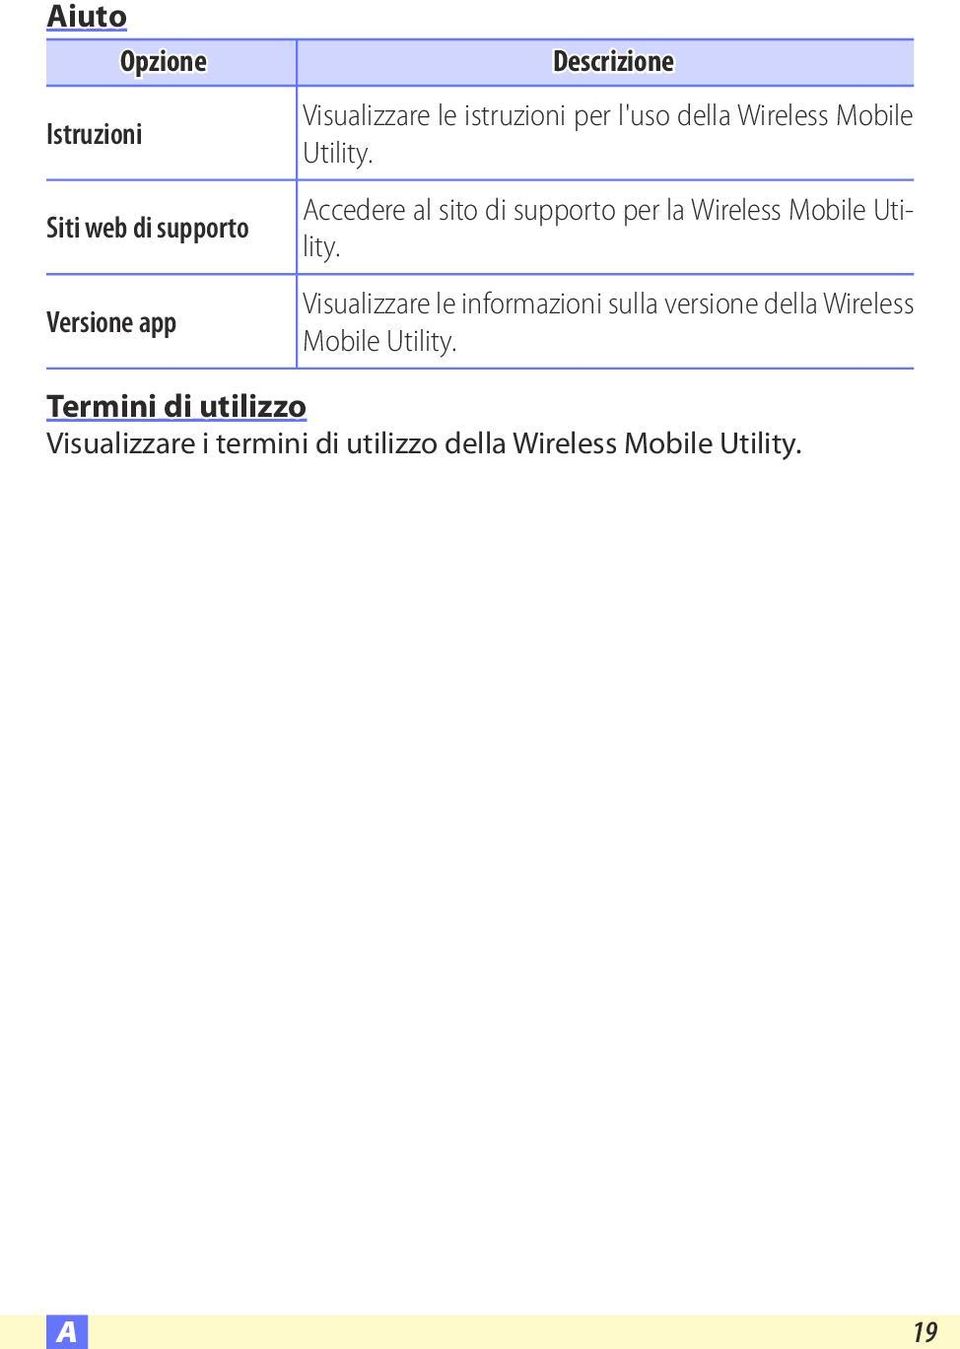 Accedere al sito di supporto per la Wireless Mobile Utility.